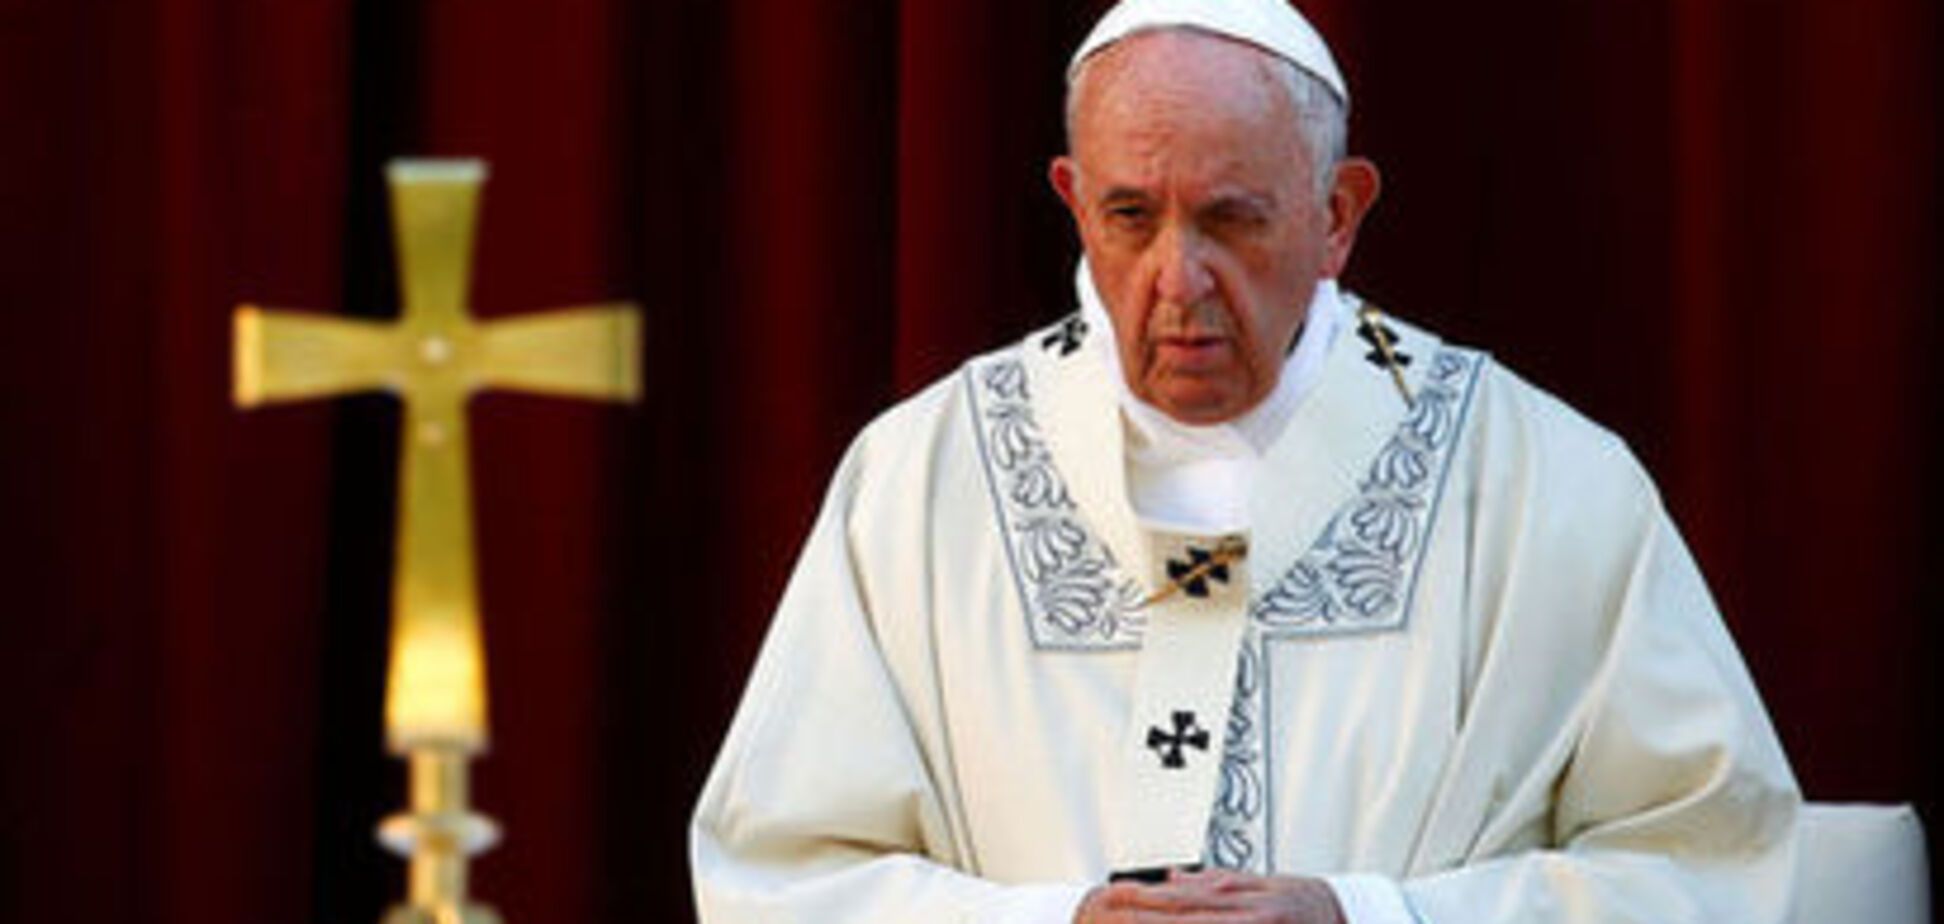 Папа Франциск дал трогательные советы миру на время карантина